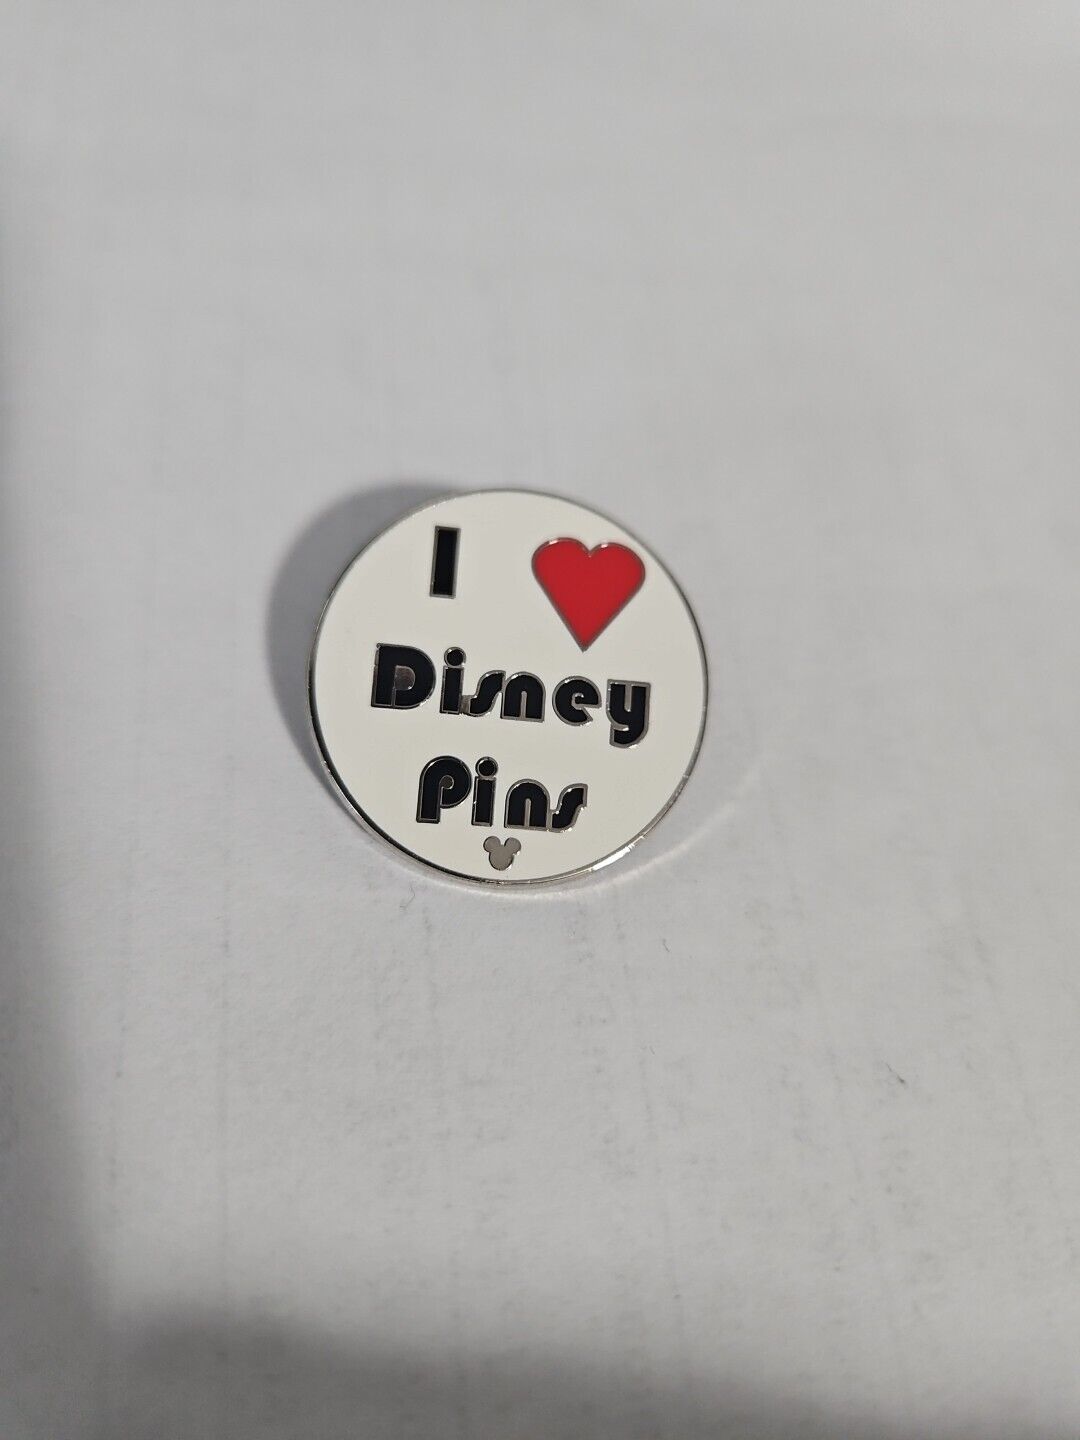 Disney Trading Pin 75152 Phrases - I heart Disney Pins